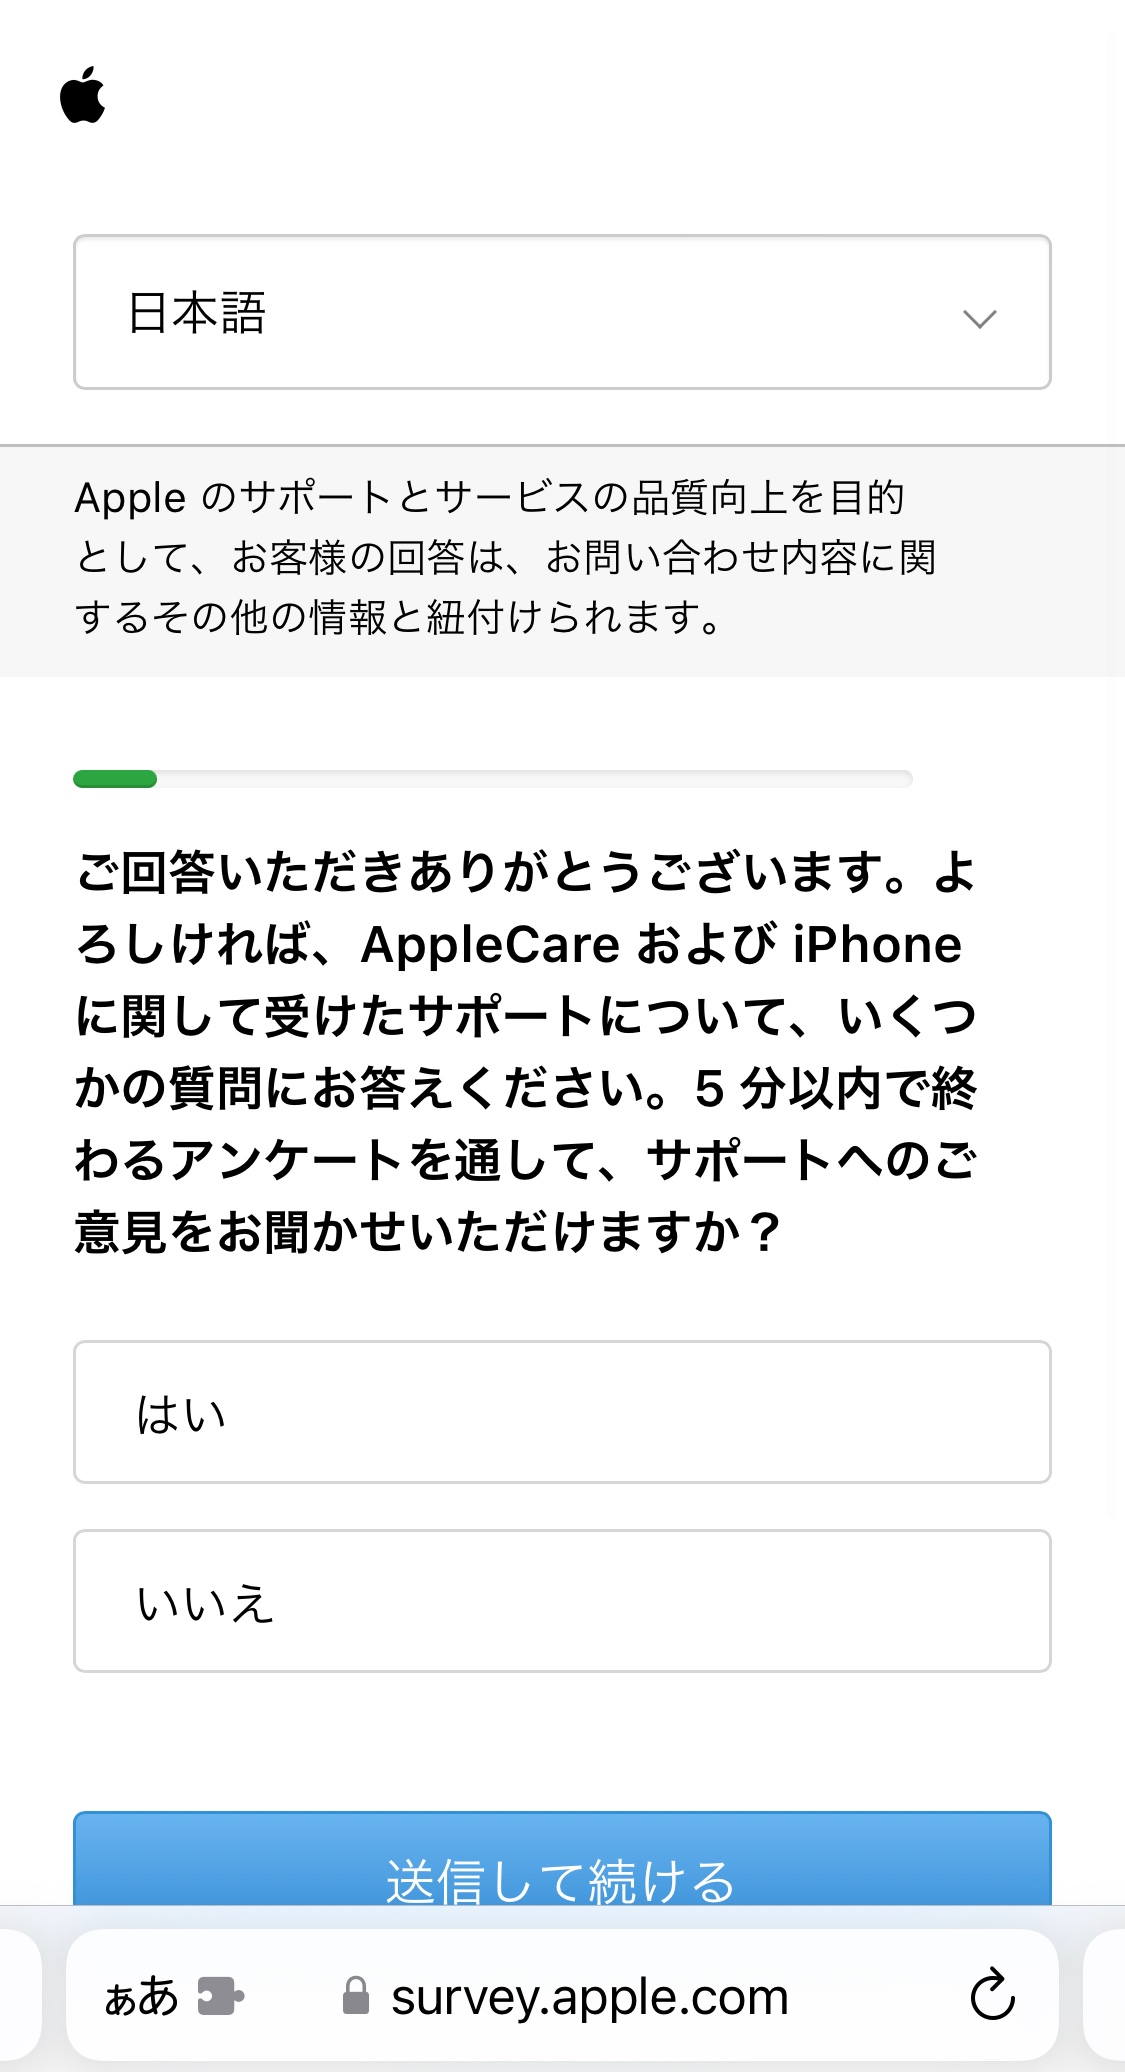 このアドレスは正規のAppleからのメ… - Apple コミュニティ